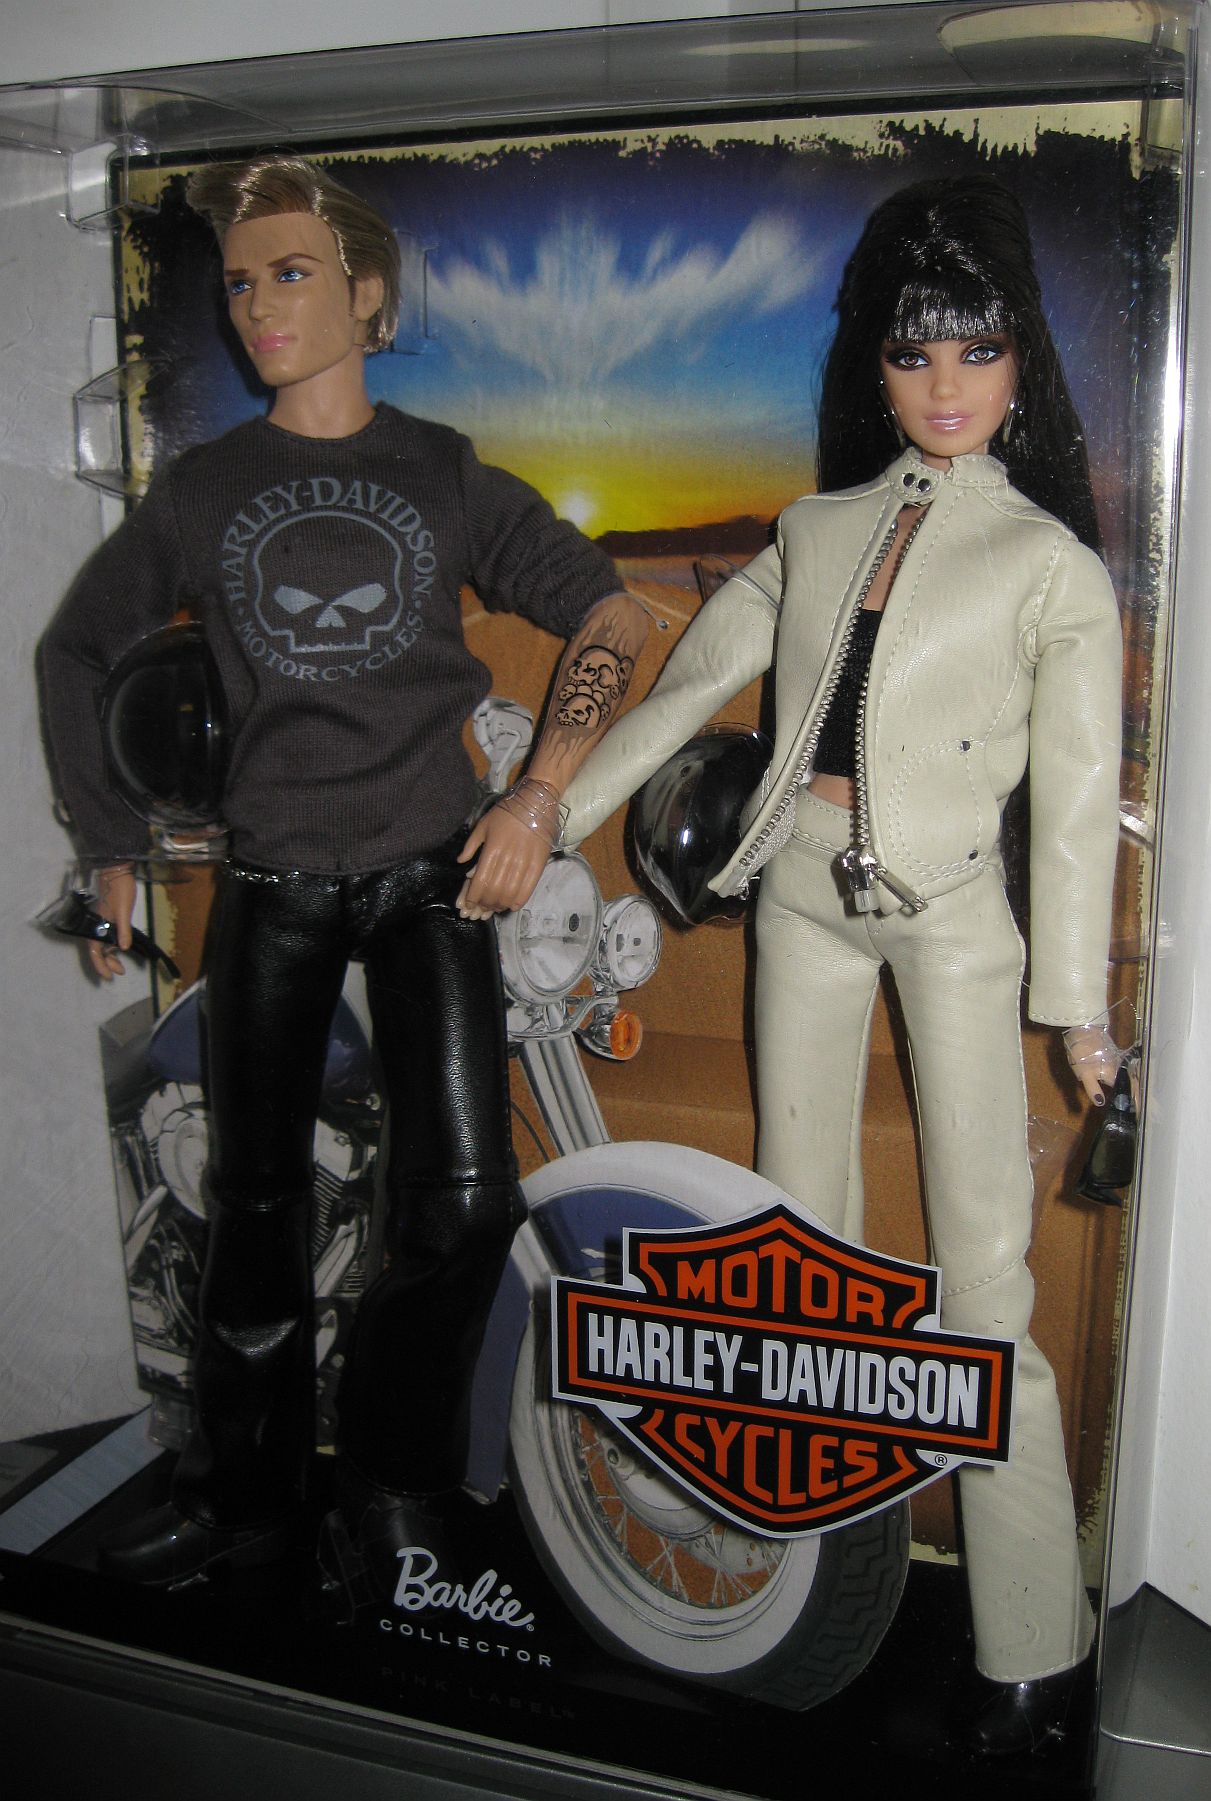 ken and barbie harley davidson dolls